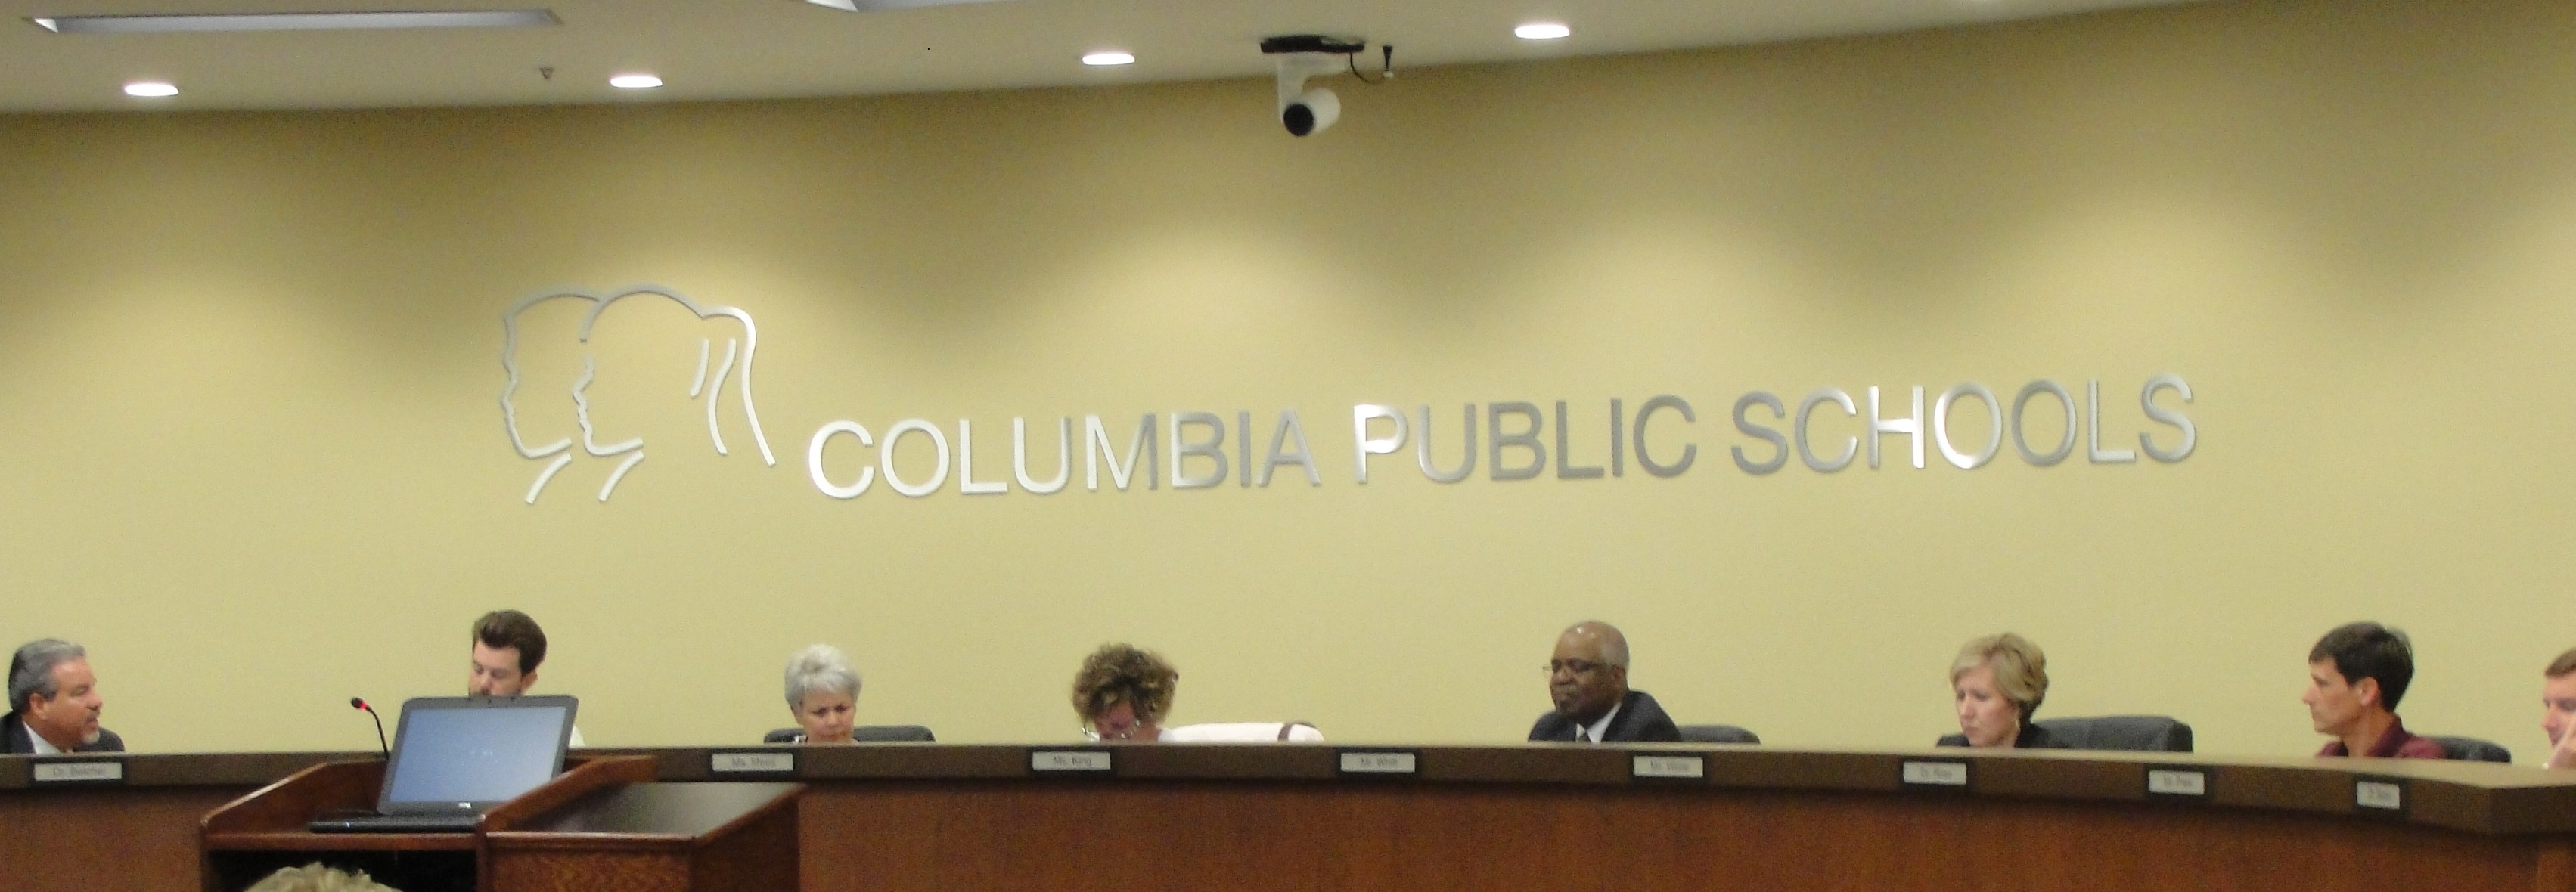 columbia-public-schools-to-seek-50-million-bond-issue-kbia